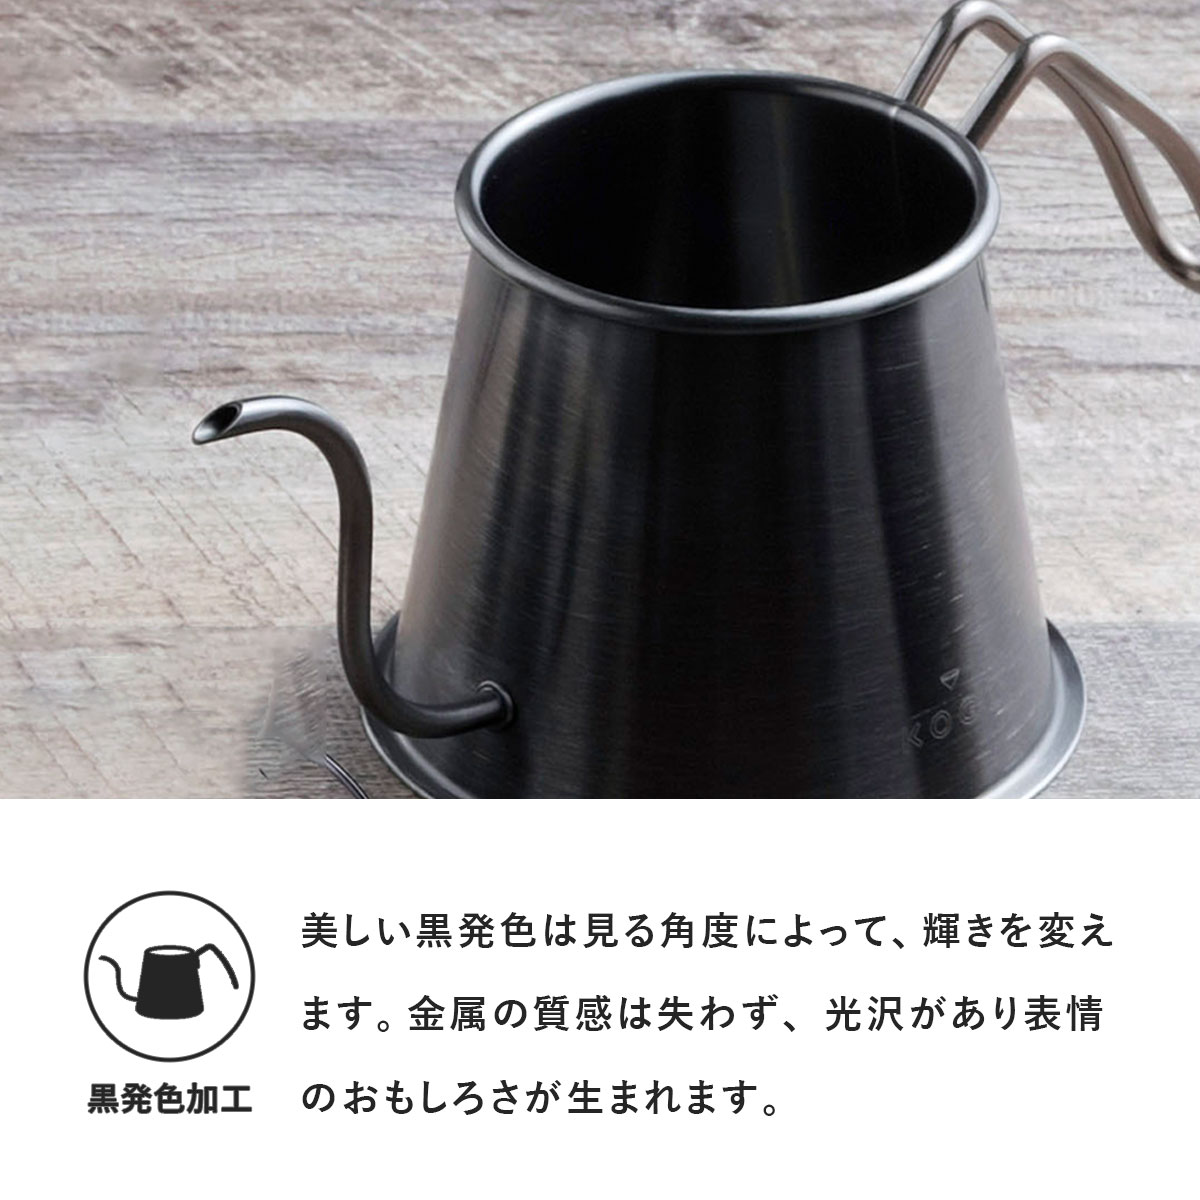 世界的に有名な珈琲考具 黒 ツードリップ 日本製 IH対応 ポット